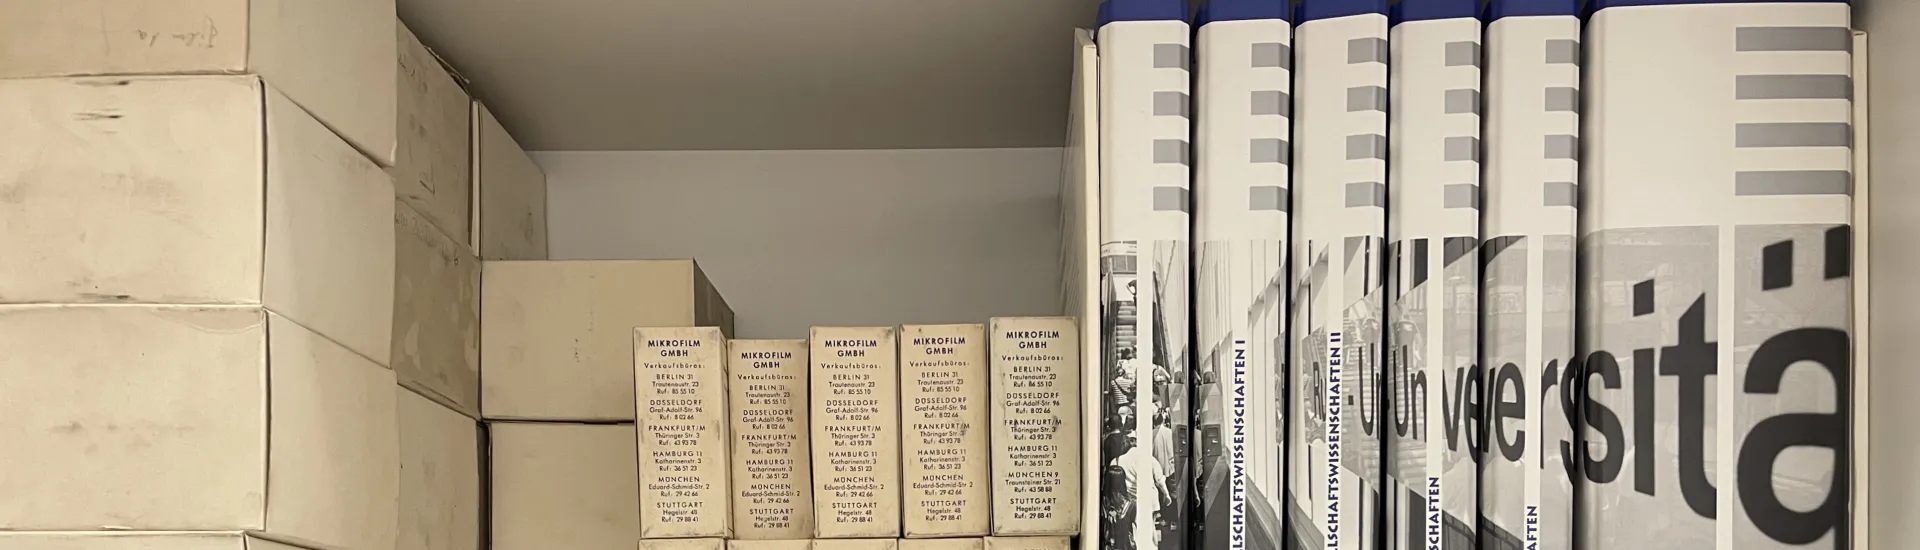 Auf zwei Regalbrettern befinden sich diverse Diasammlungen in transparenten Boxen, eine Publikationsreihe, deren Buchrücken zusammen ein Foto, auf dem der Schriftzug "Universität" zu sehen ist, ergeben, sowie diverse kleinere Materialien in Kartonagen zu sehen.